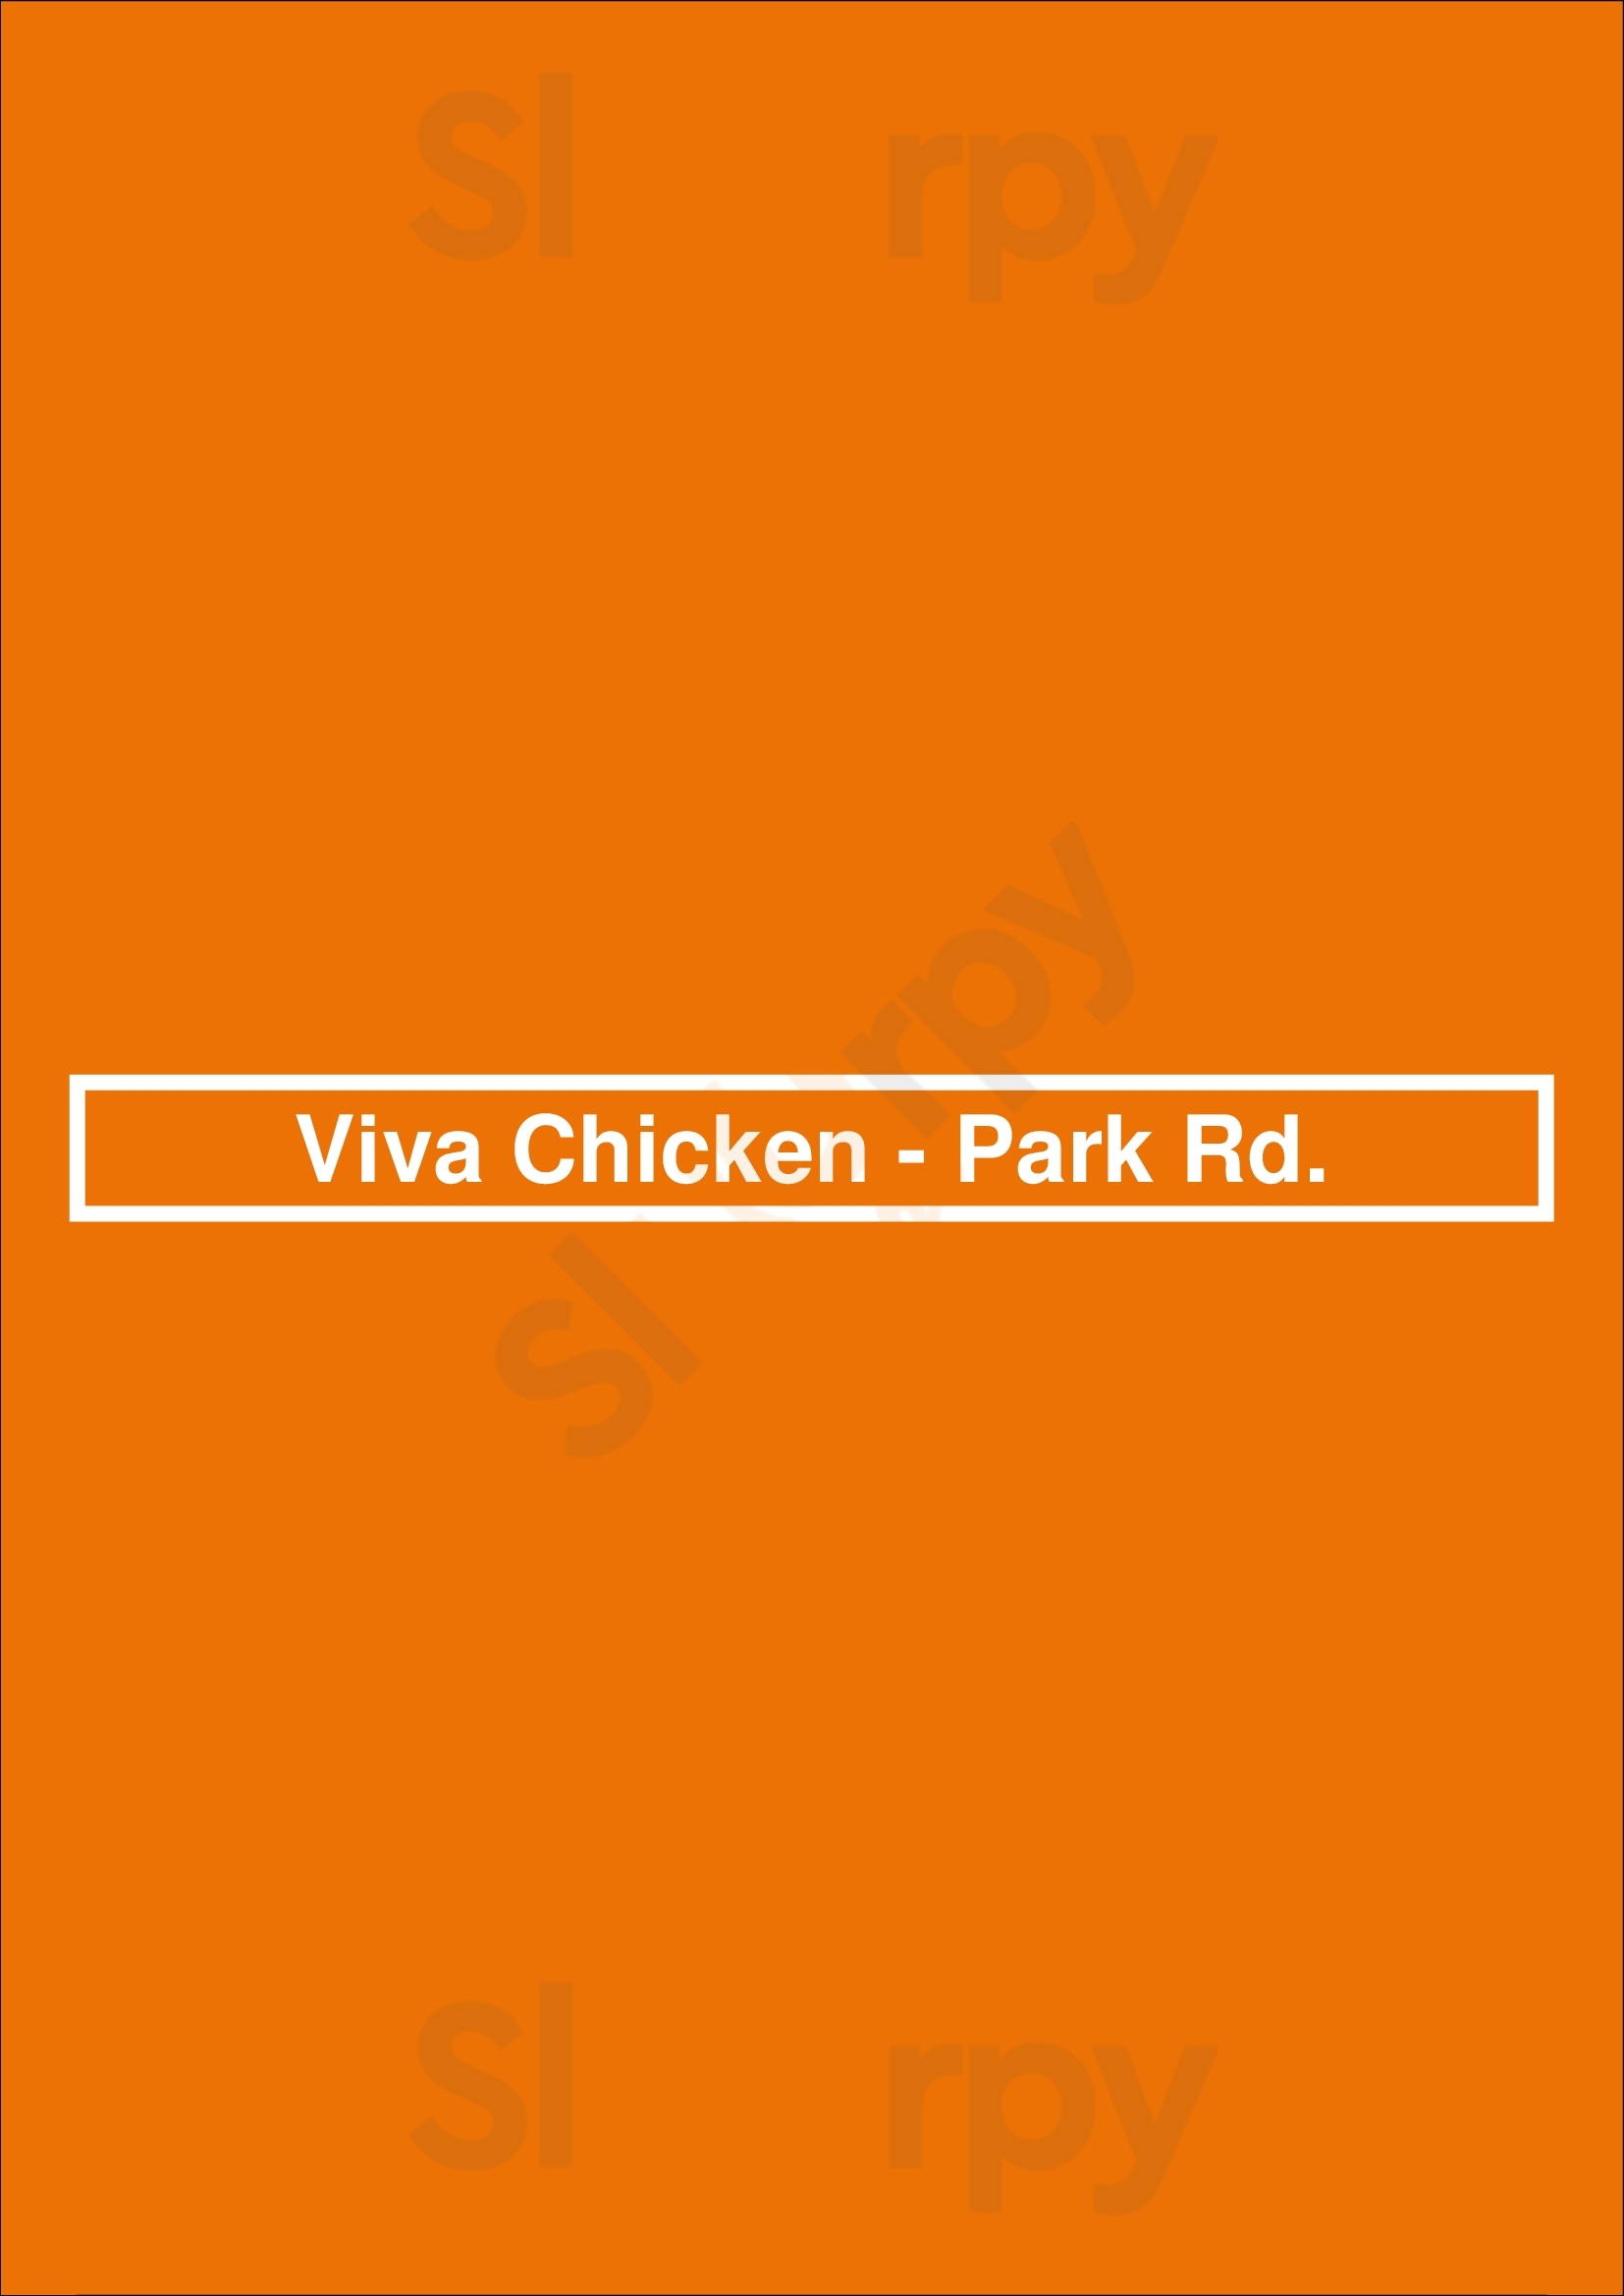 Viva Chicken - Park Rd. Charlotte Menu - 1